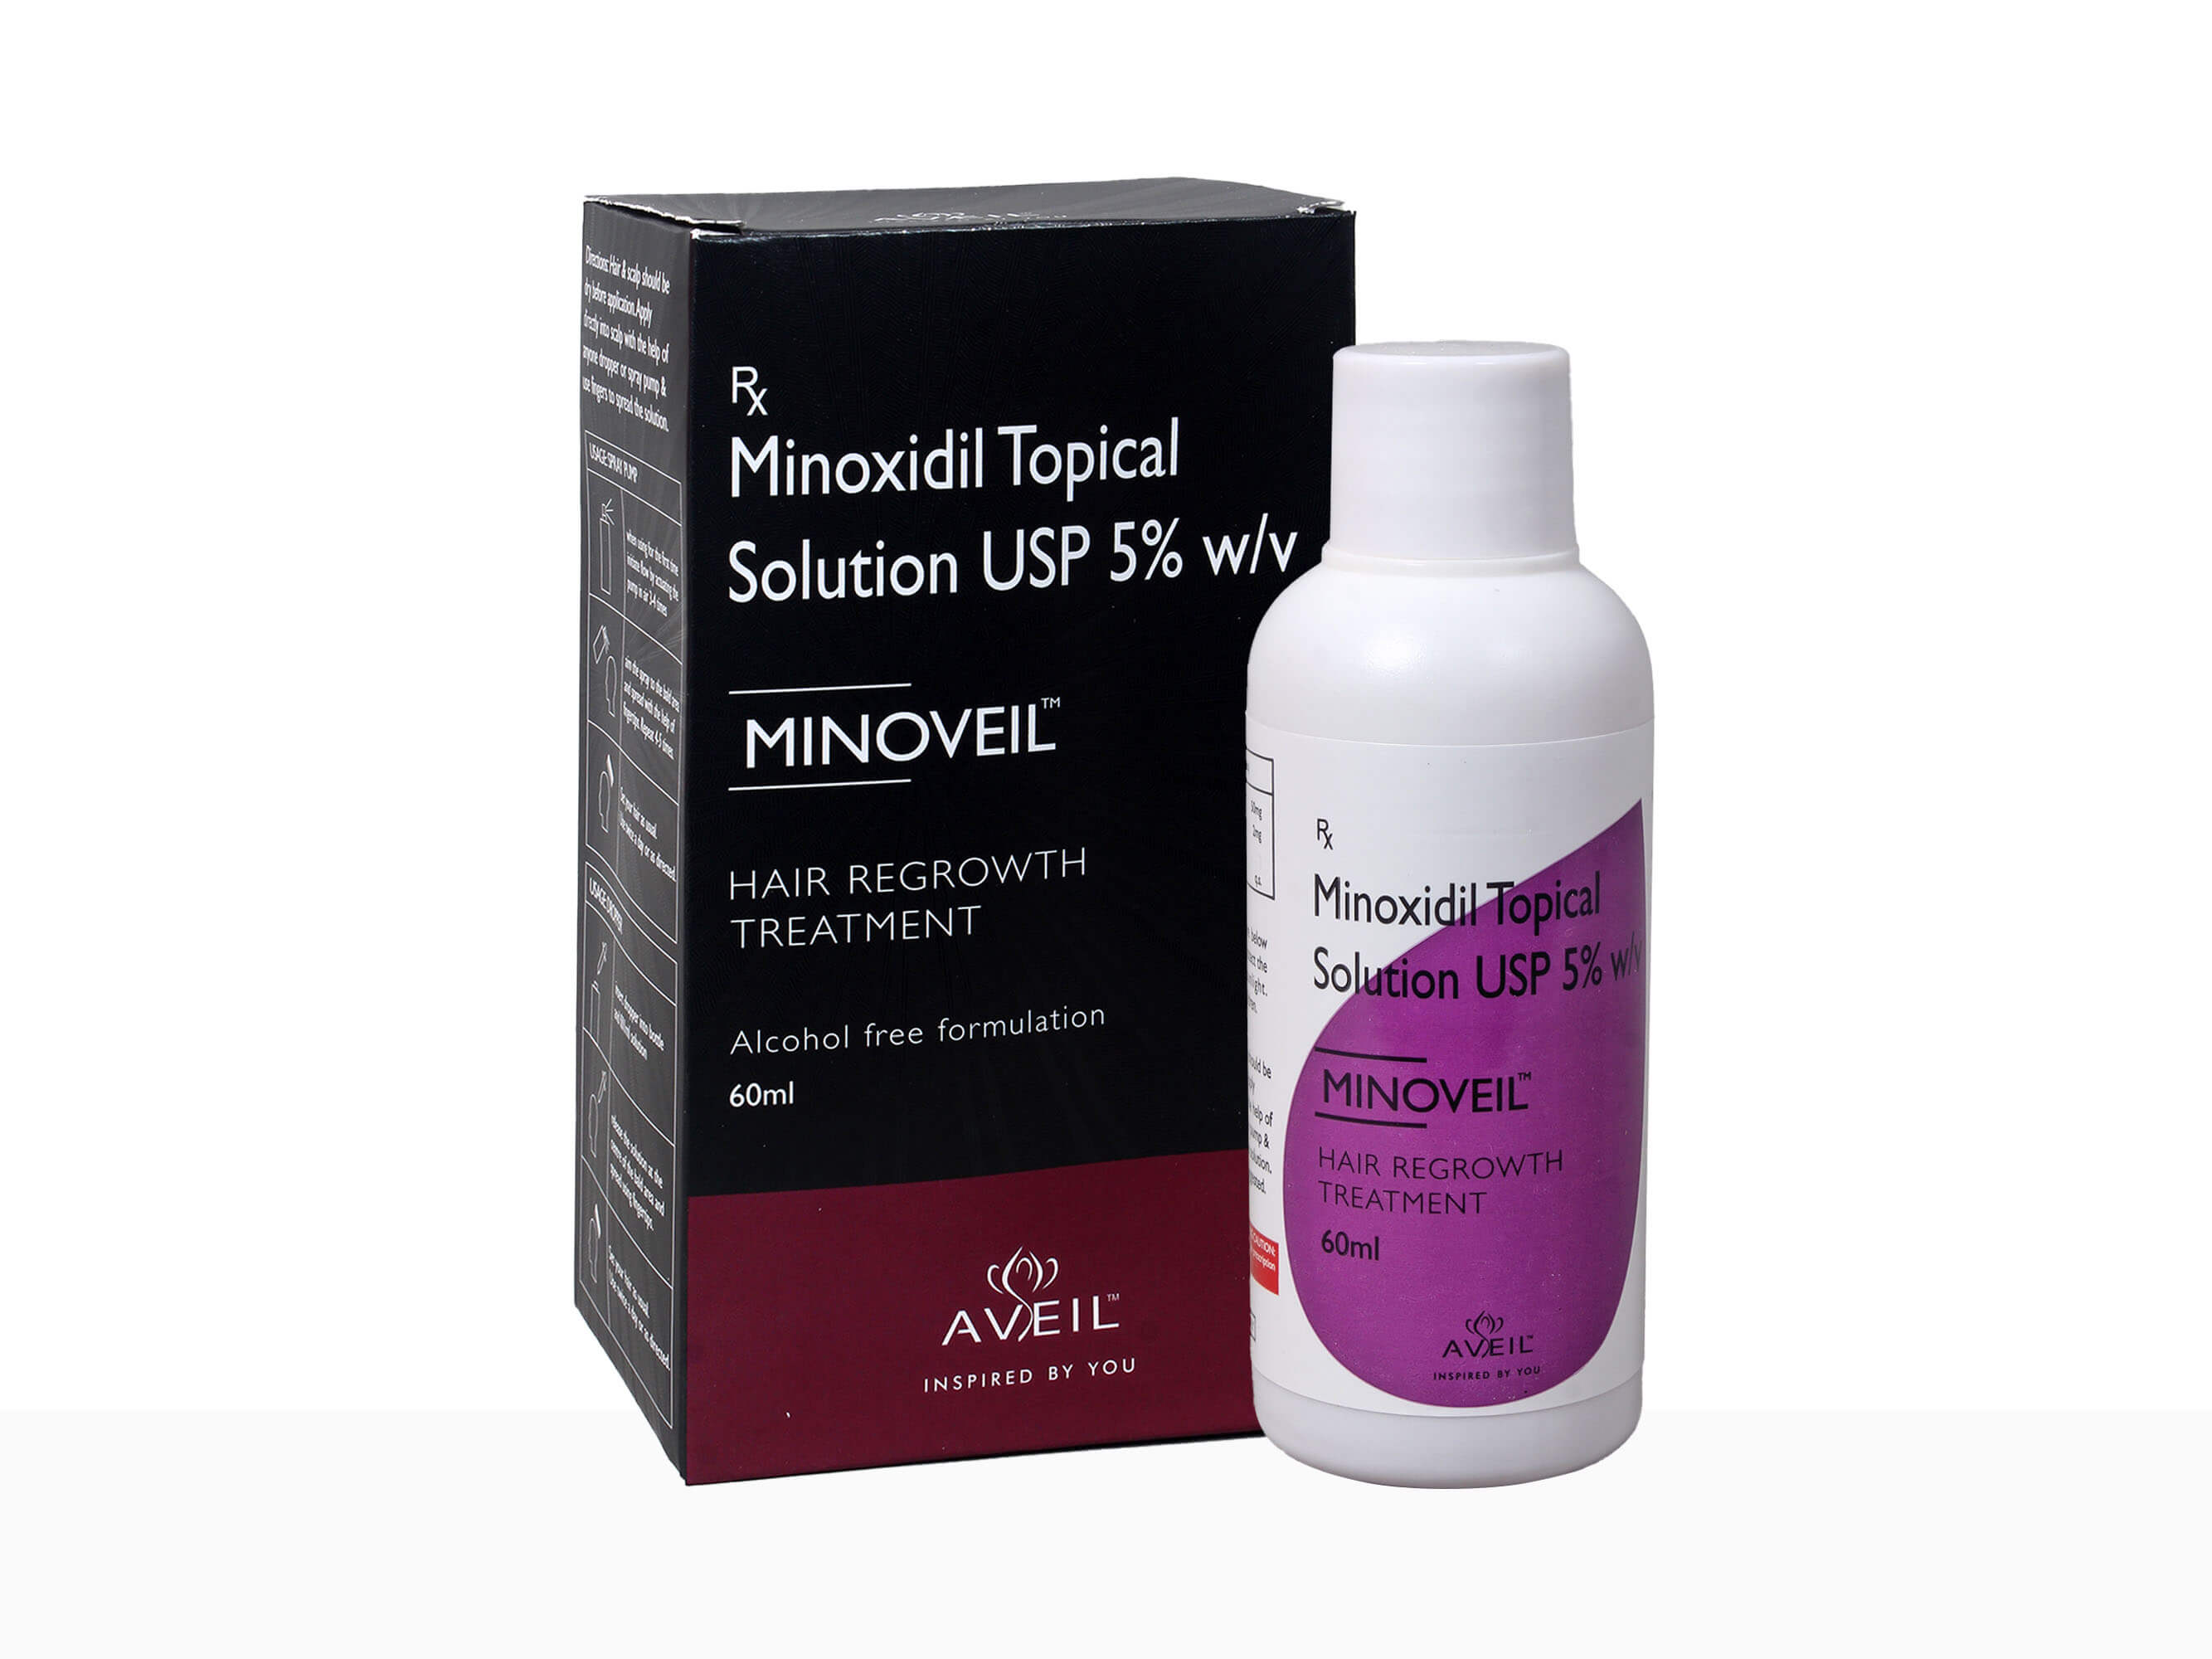 Aveil Hair Regrowth Minoveil 5% - Clinikally